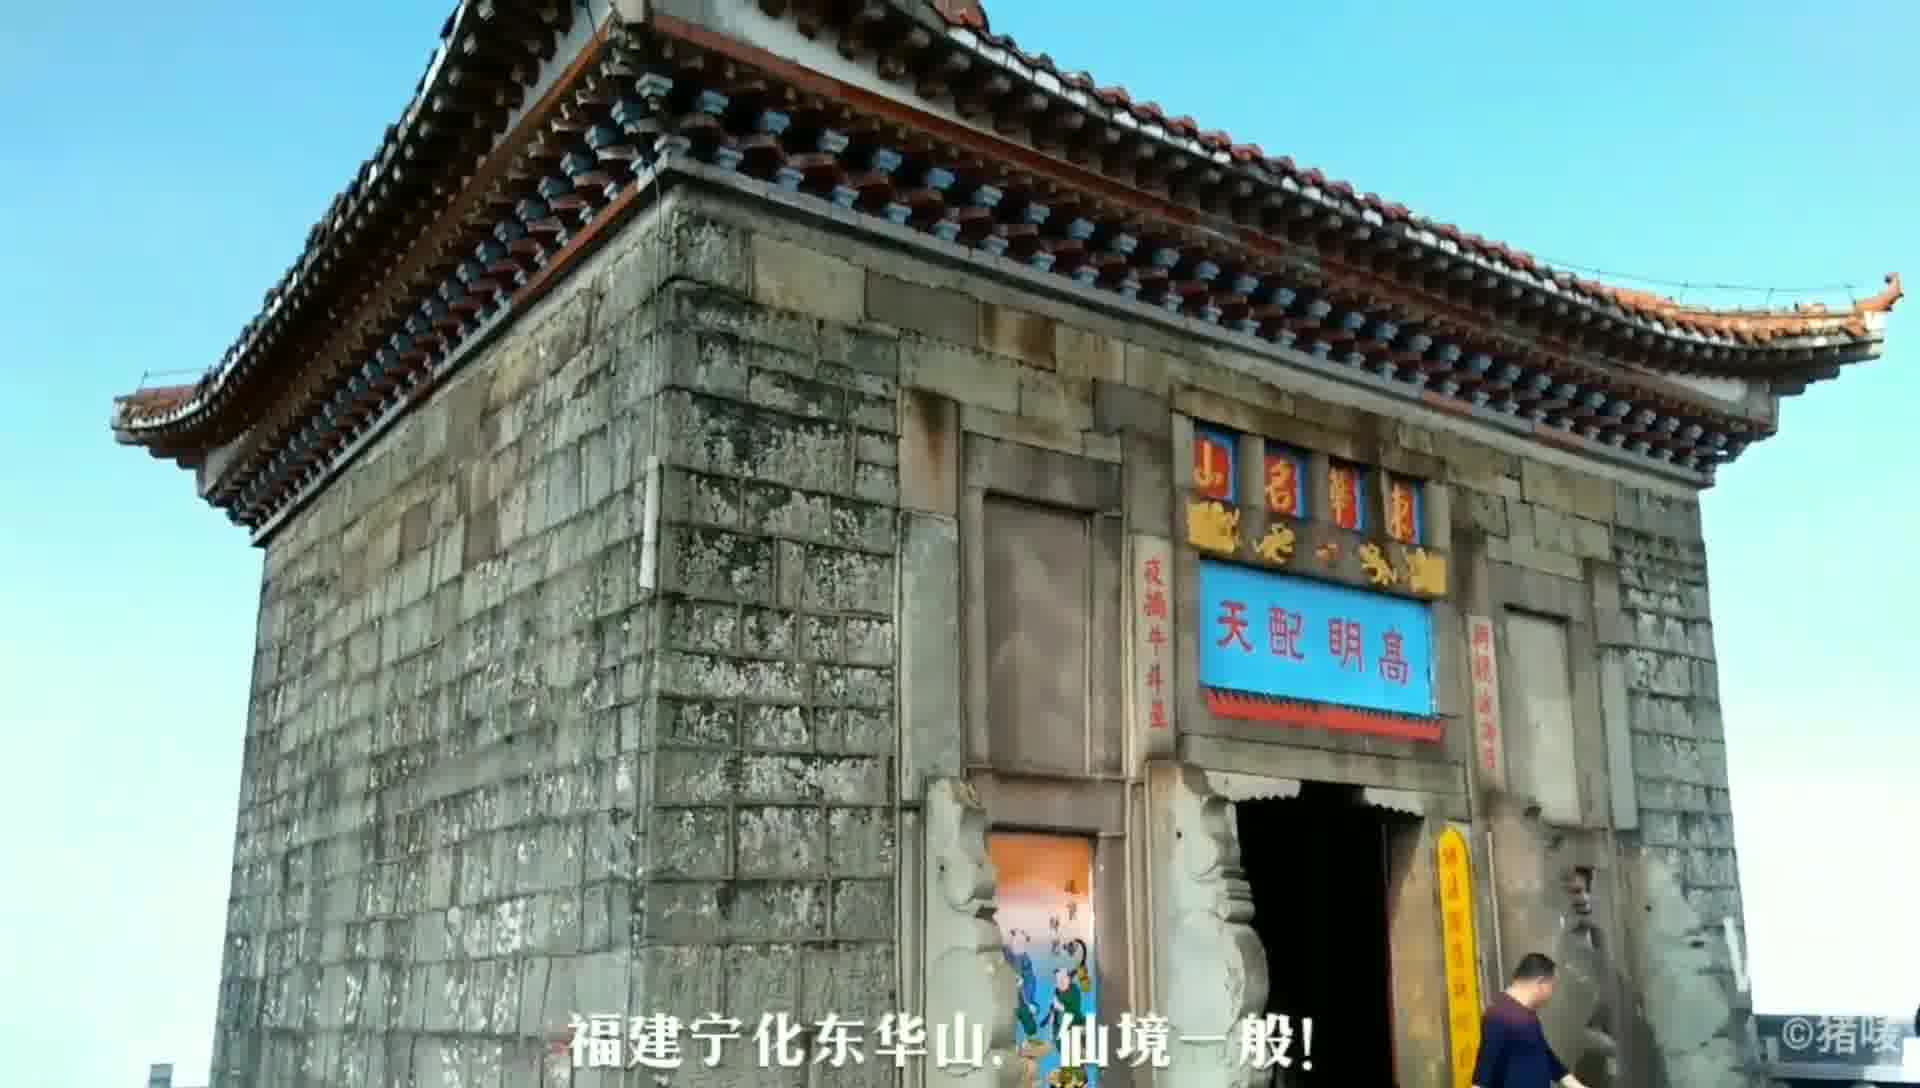 东华山，福建宁化与江西石城两县有名的佛、道两教之圣地。